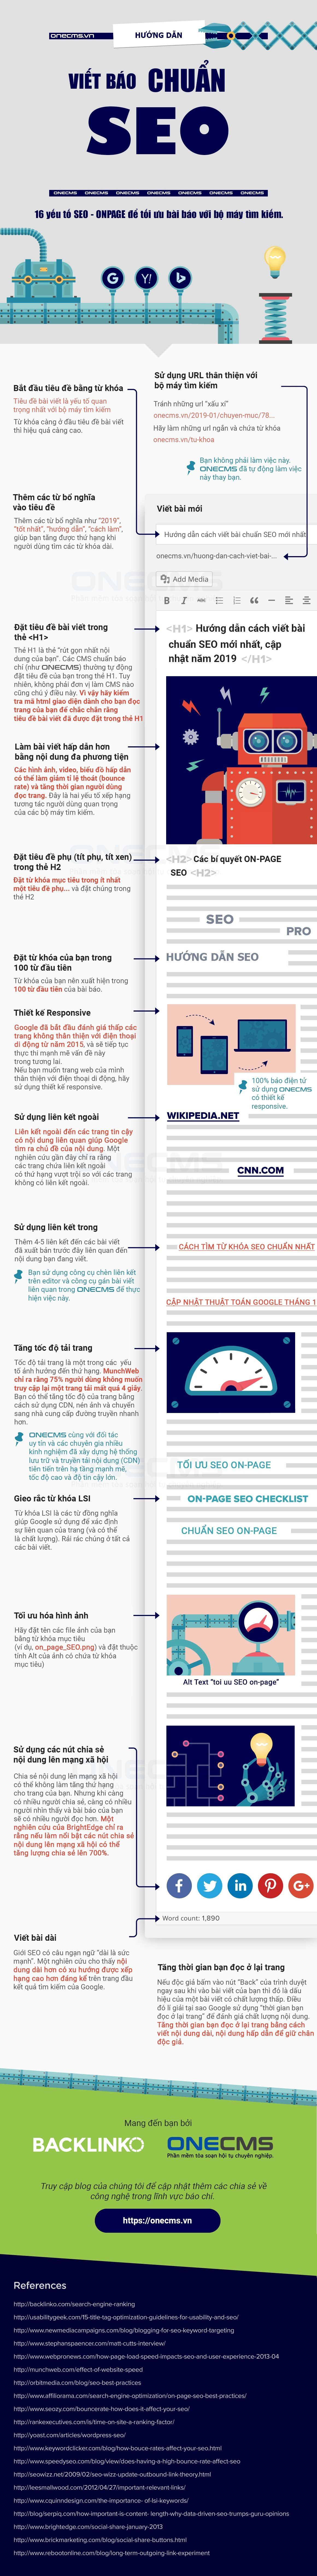 b1-infographic-cach-viet-bai-chuan-seo-toa-soan-bao-dien-tu-huong-dan-seo-web-hieu-qua-len-top.jpg